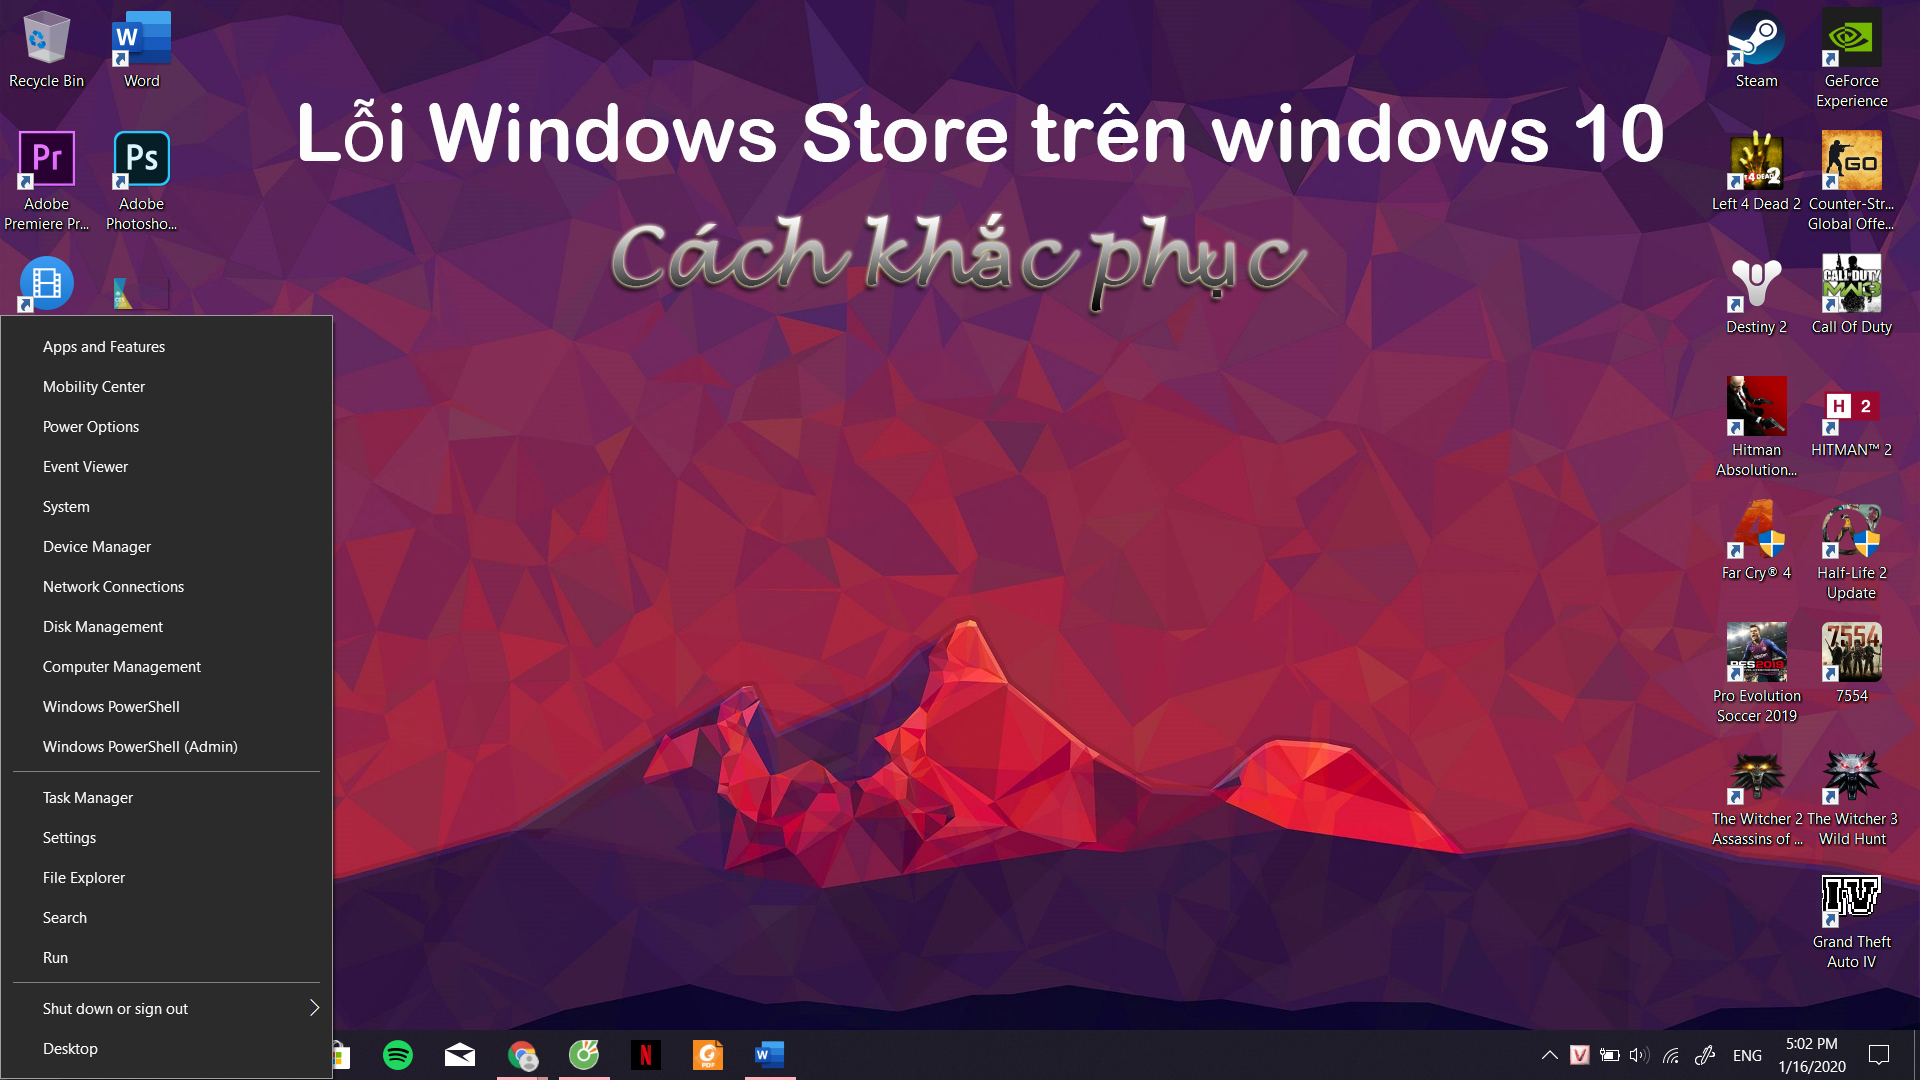 Lỗi Windows Store trên windows 10 - Cách khắc phục